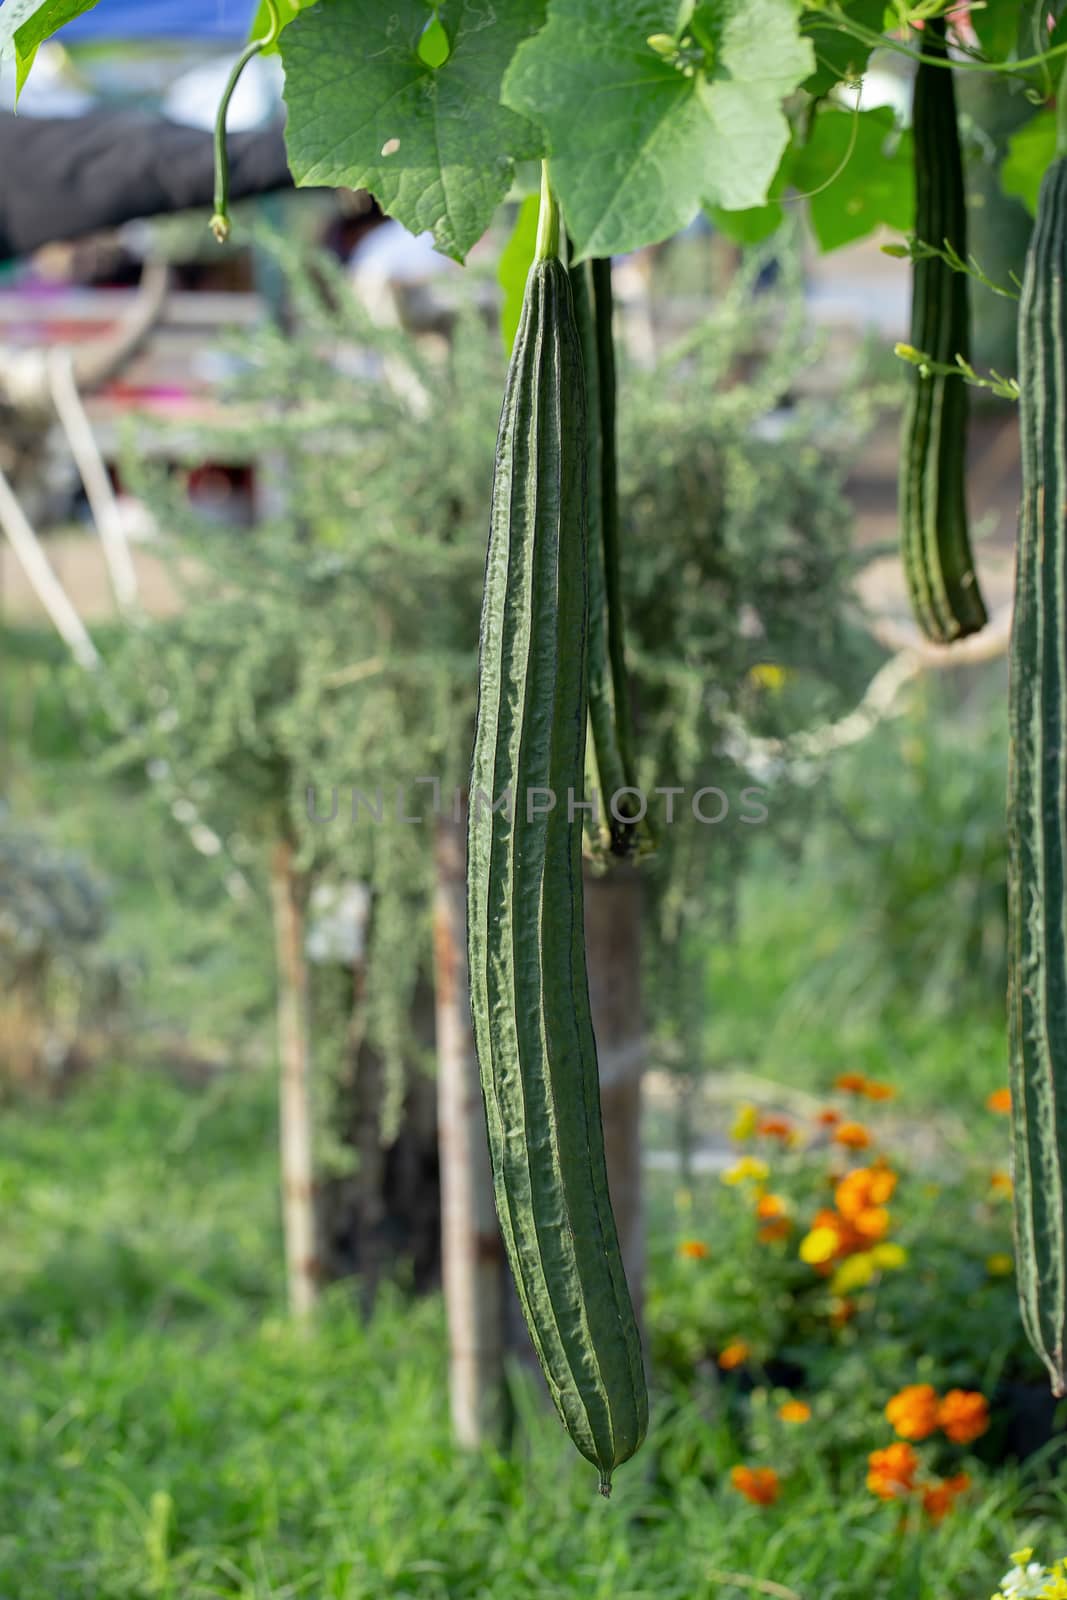 Luffa gourd plant in garden, luffa cylindrica.